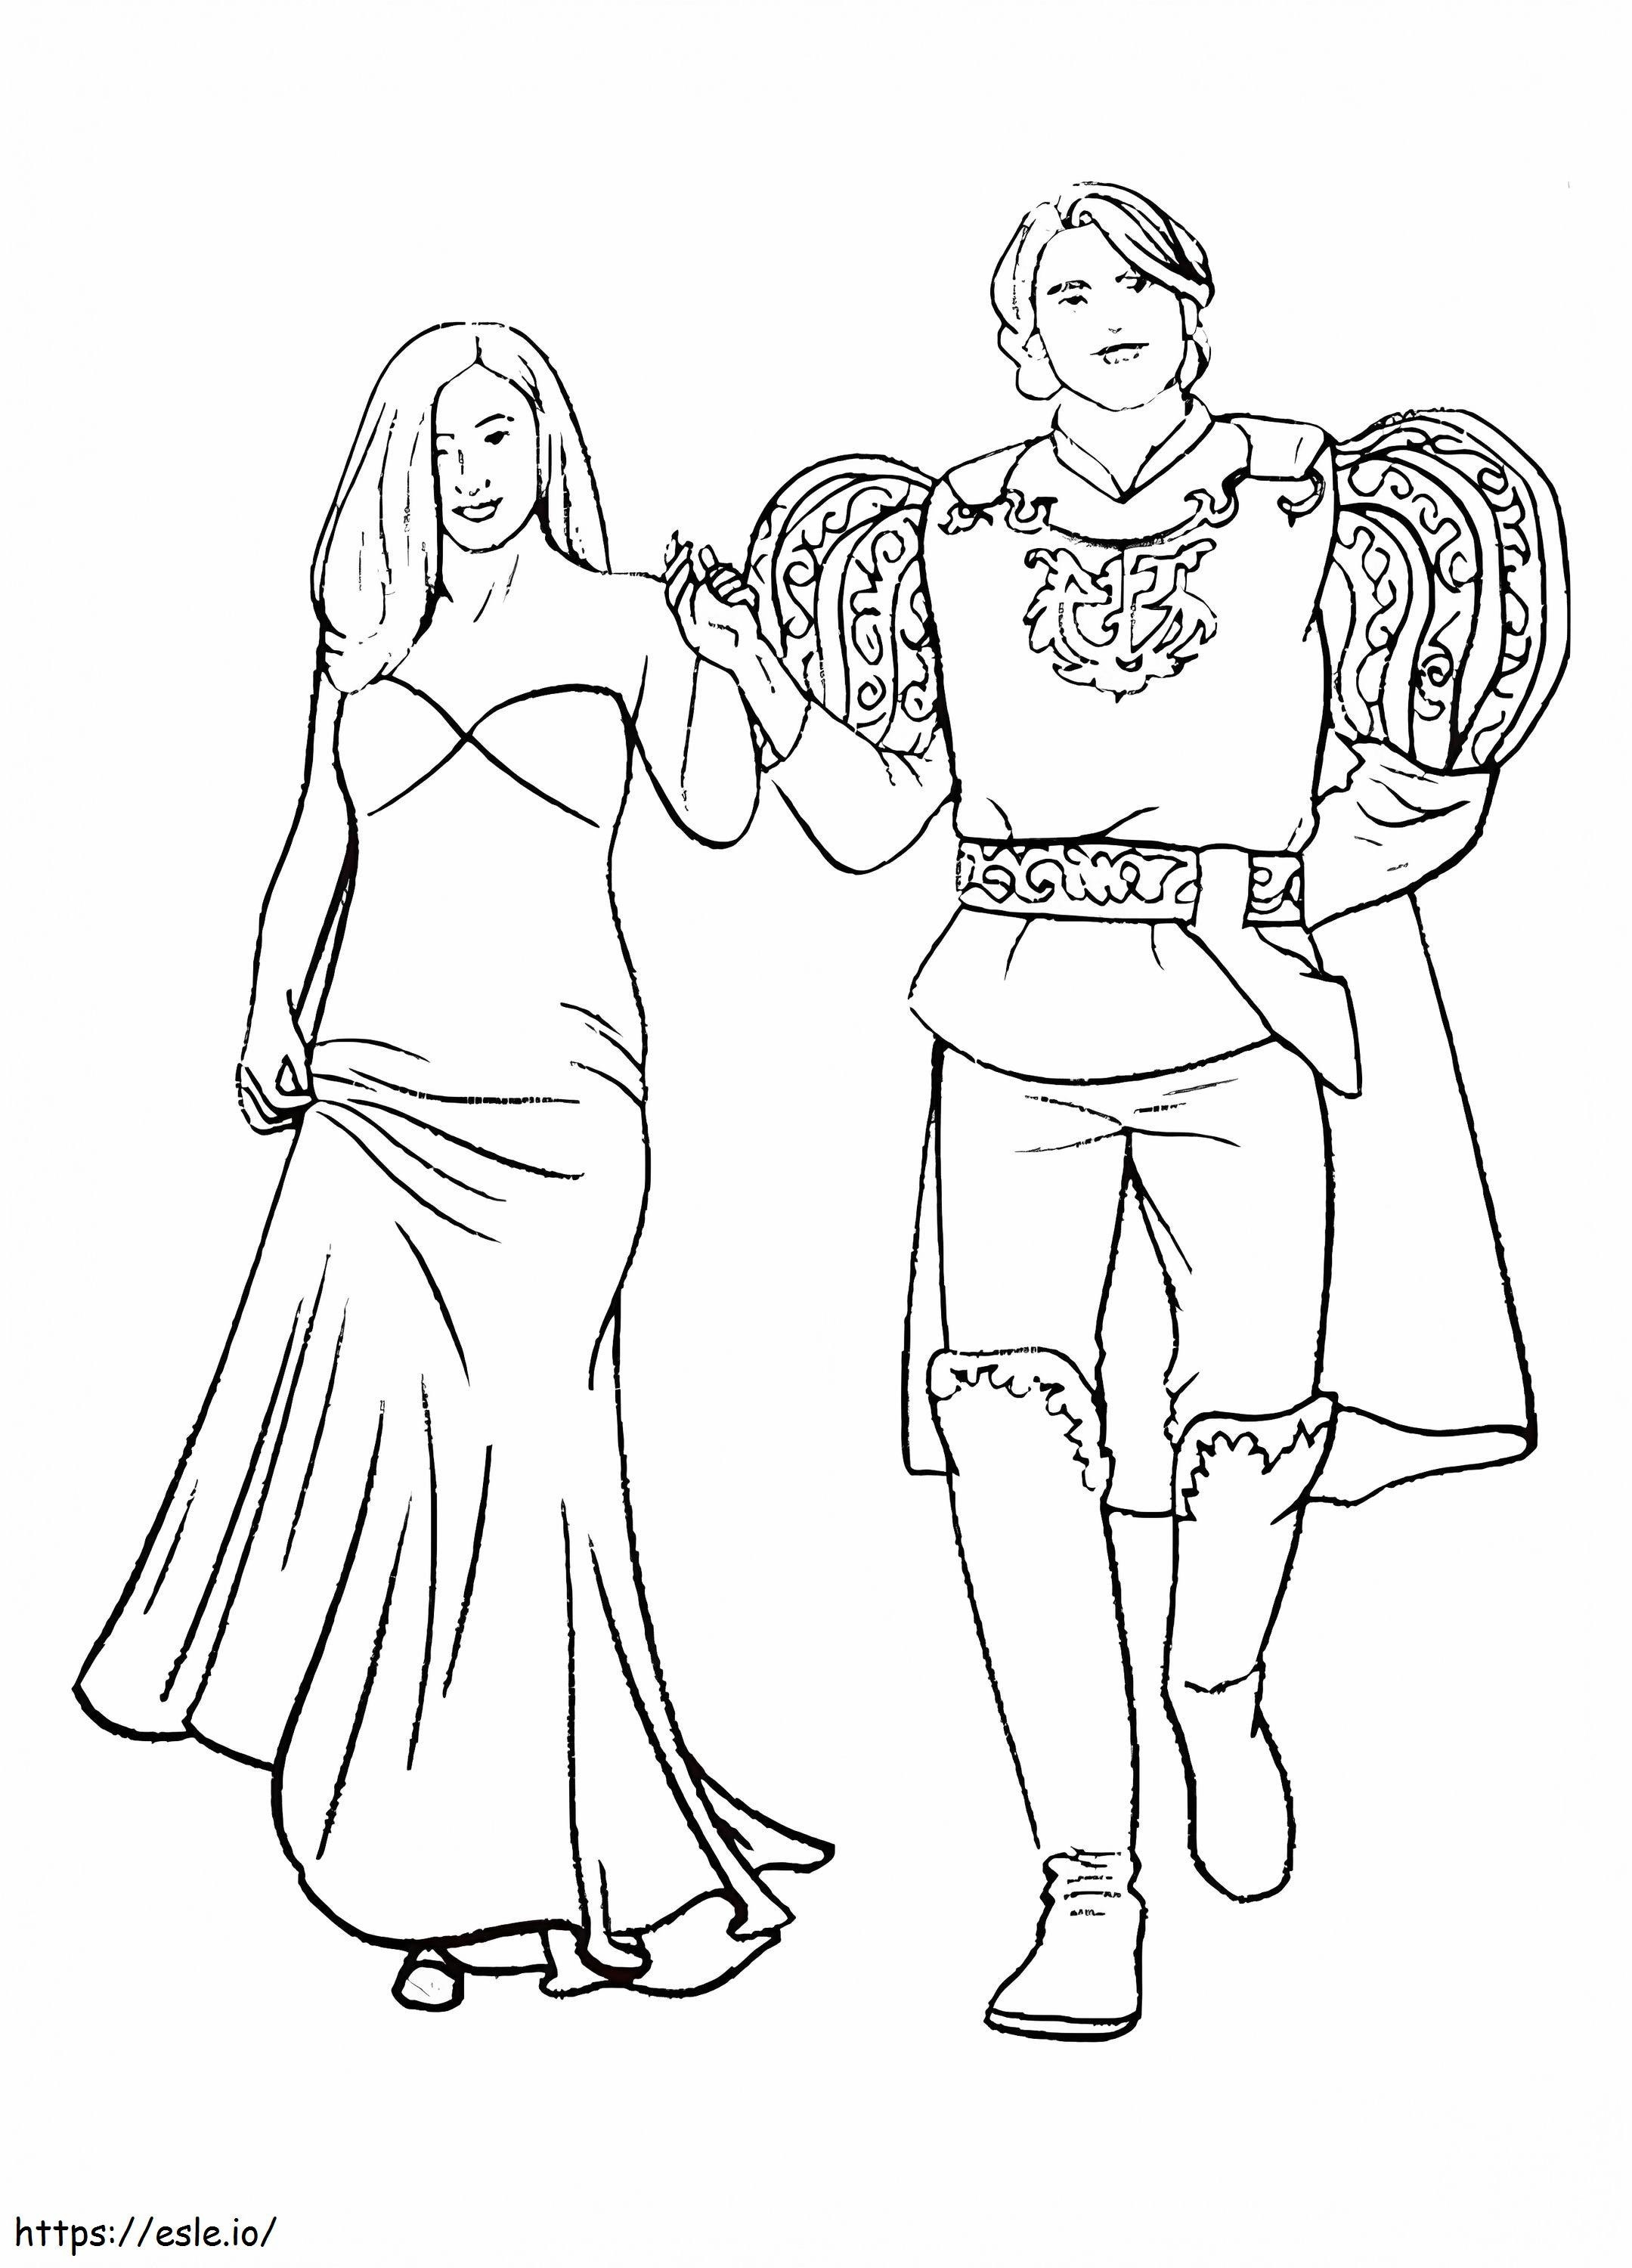 Prinz und Giselle ausmalbilder